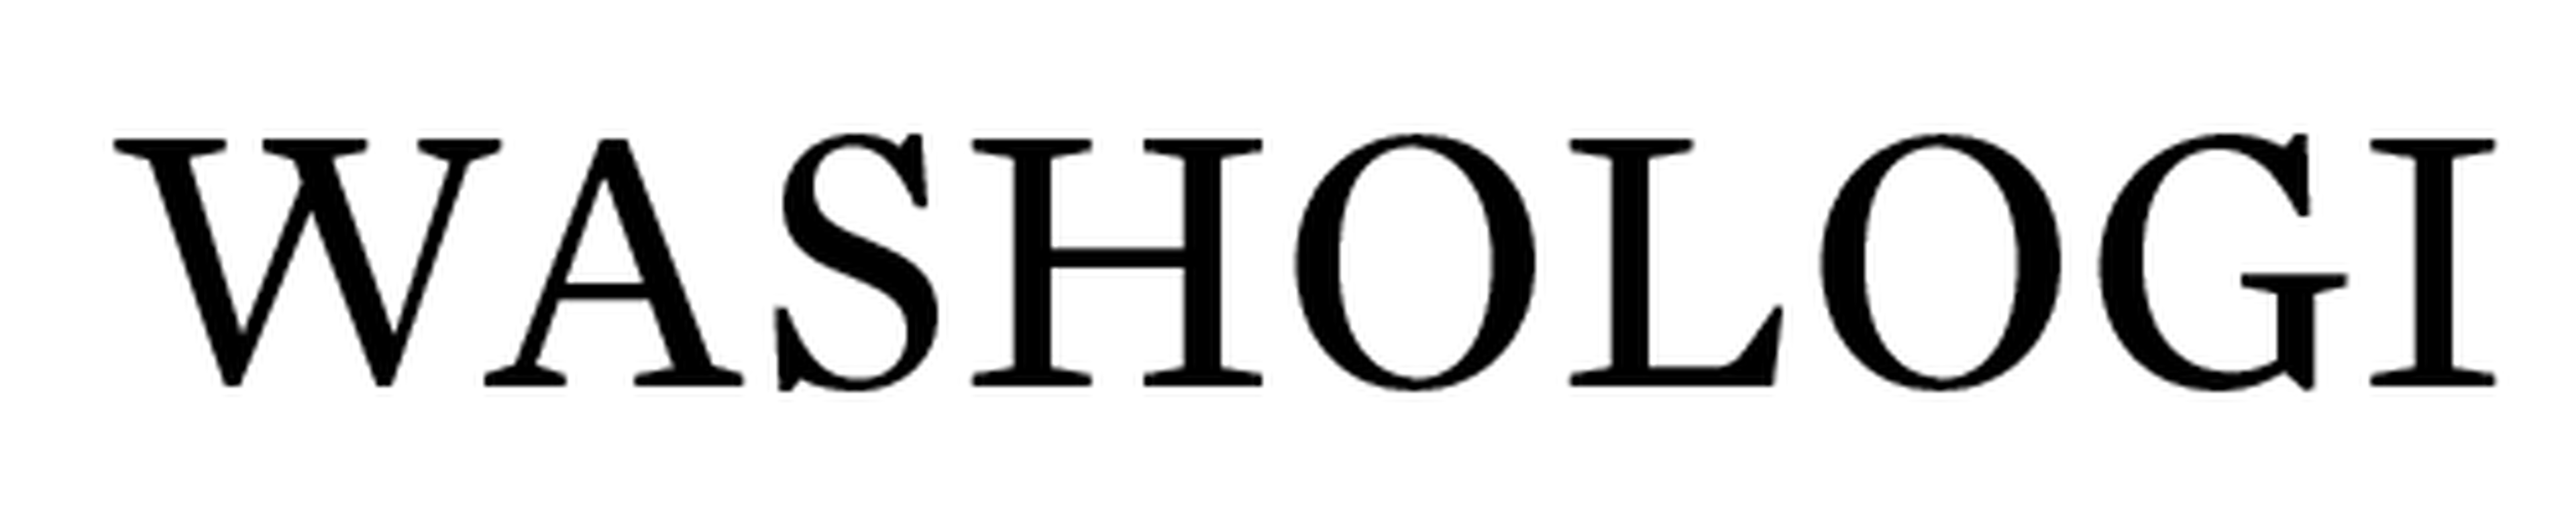 Washologi logotype